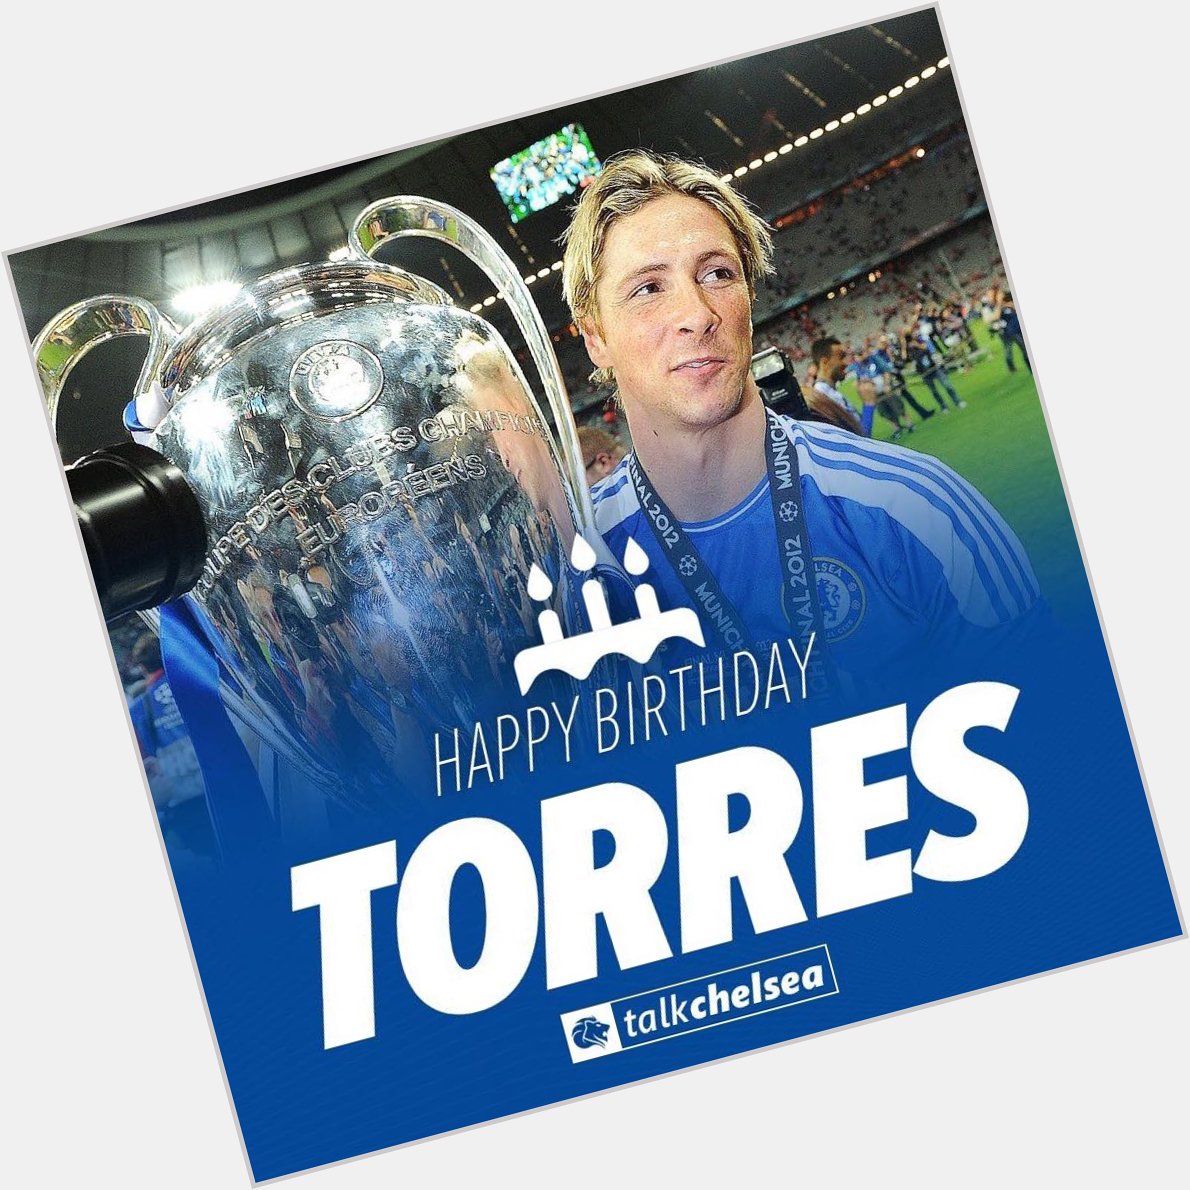 Happy Birthday, Fernando Torres 